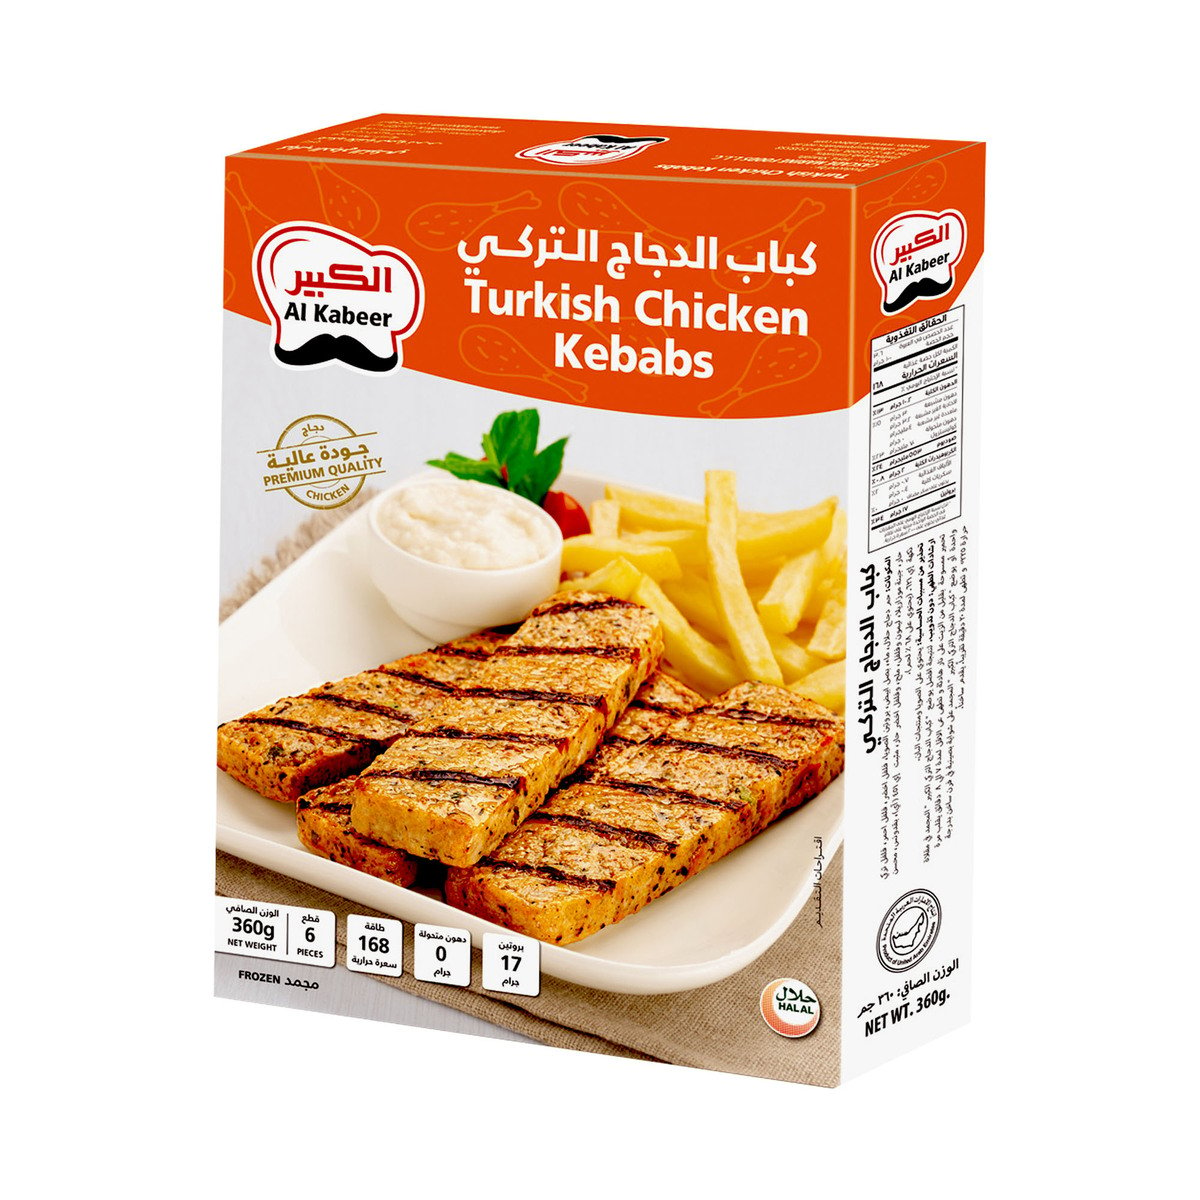 اشتري قم بشراء الكبير كباب دجاج تركي 360 جم Online at Best Price من الموقع - من لولو هايبر ماركت Kebabs في السعودية